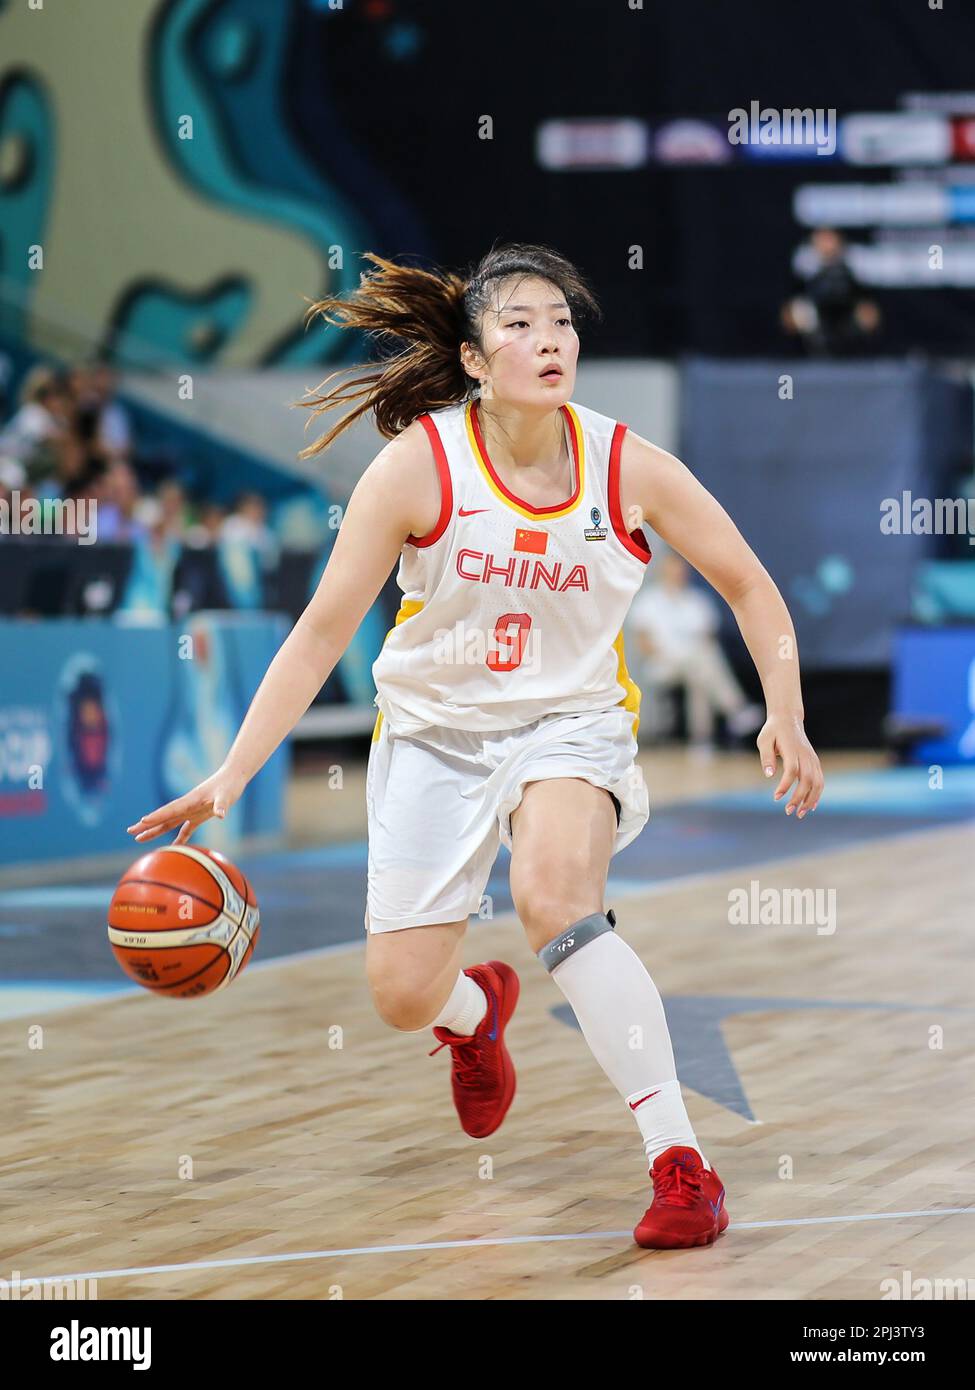 Espagne, Ténérife, 23 septembre 2018: Joueur de basket-ball féminin chinois Li Meng en action pendant la coupe du monde de basket-ball féminin FIBA Banque D'Images